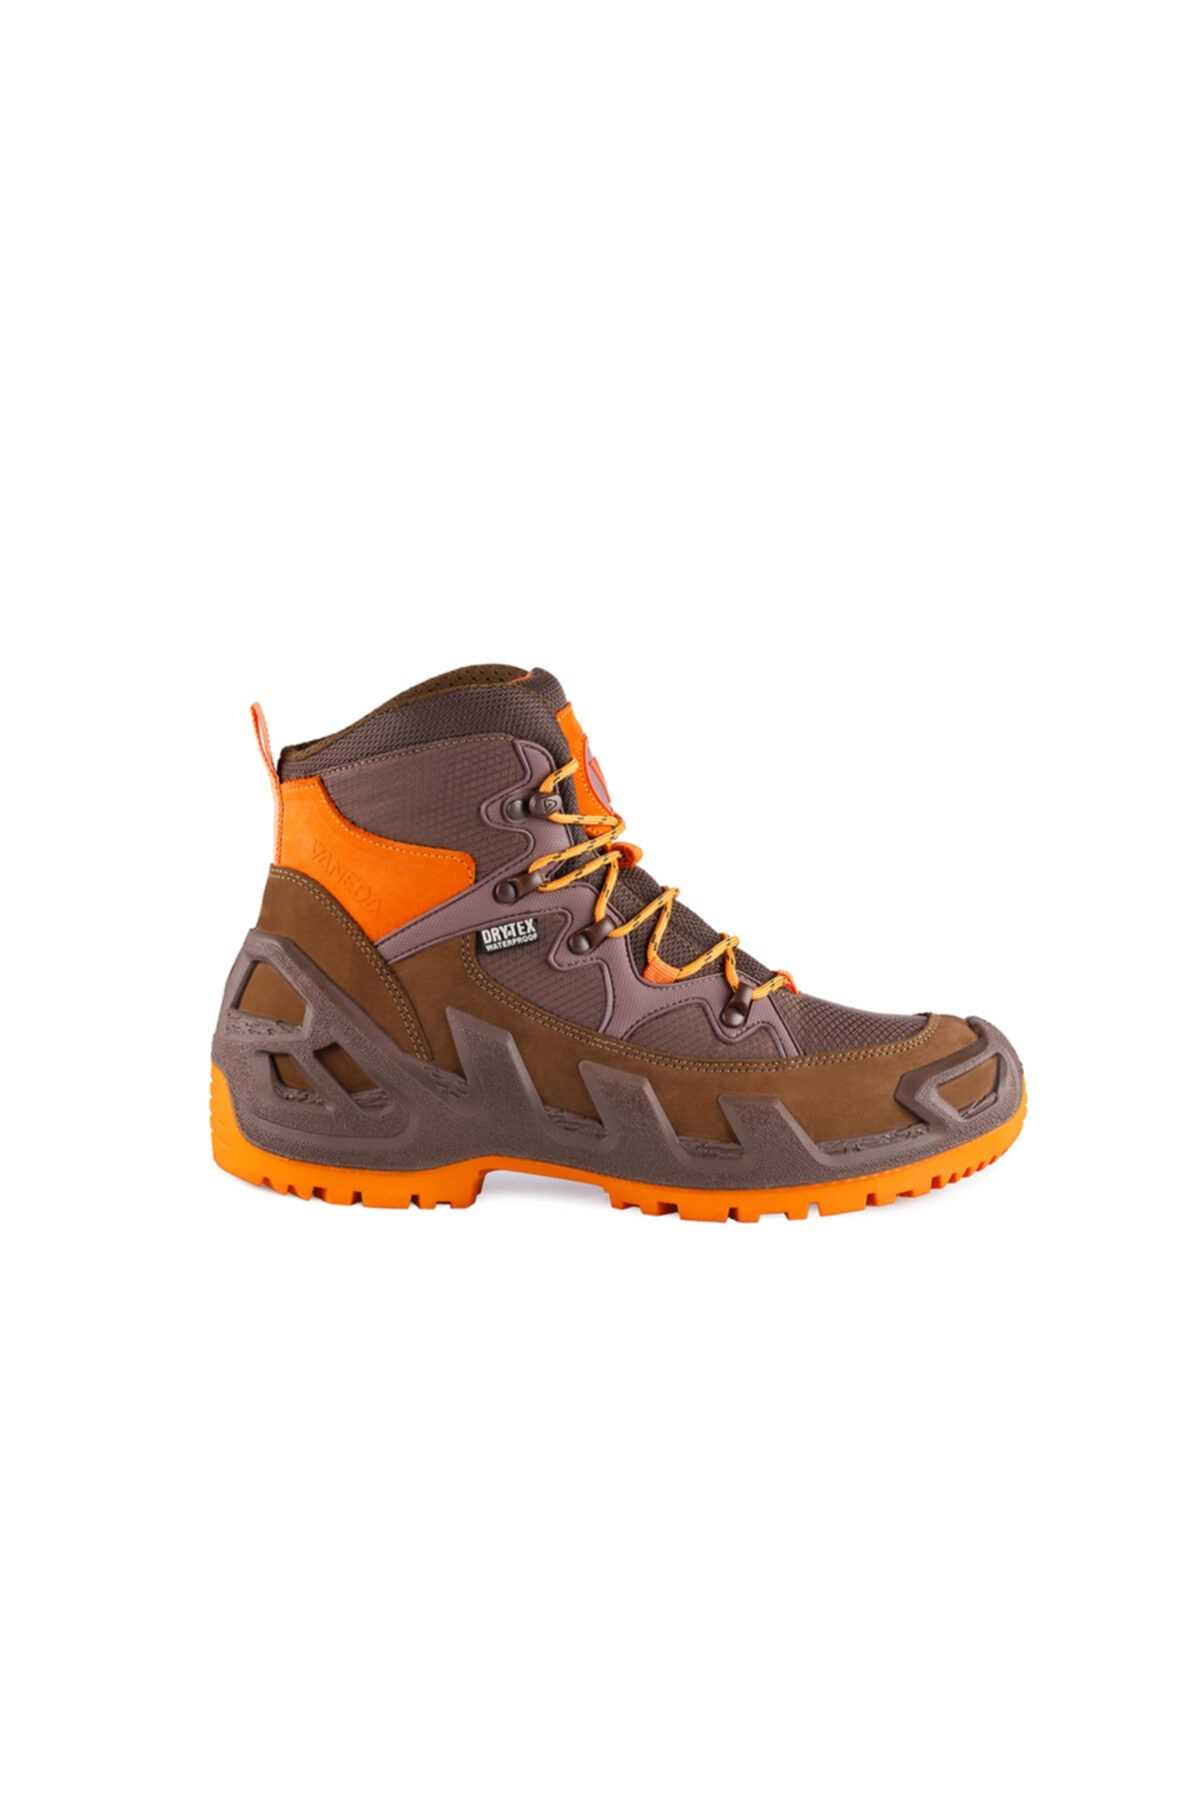 خرید اینترنتی کفش کوهنوردی مردانه مخصوص برف برند Vaneda رنگ نارنجی ty160959377